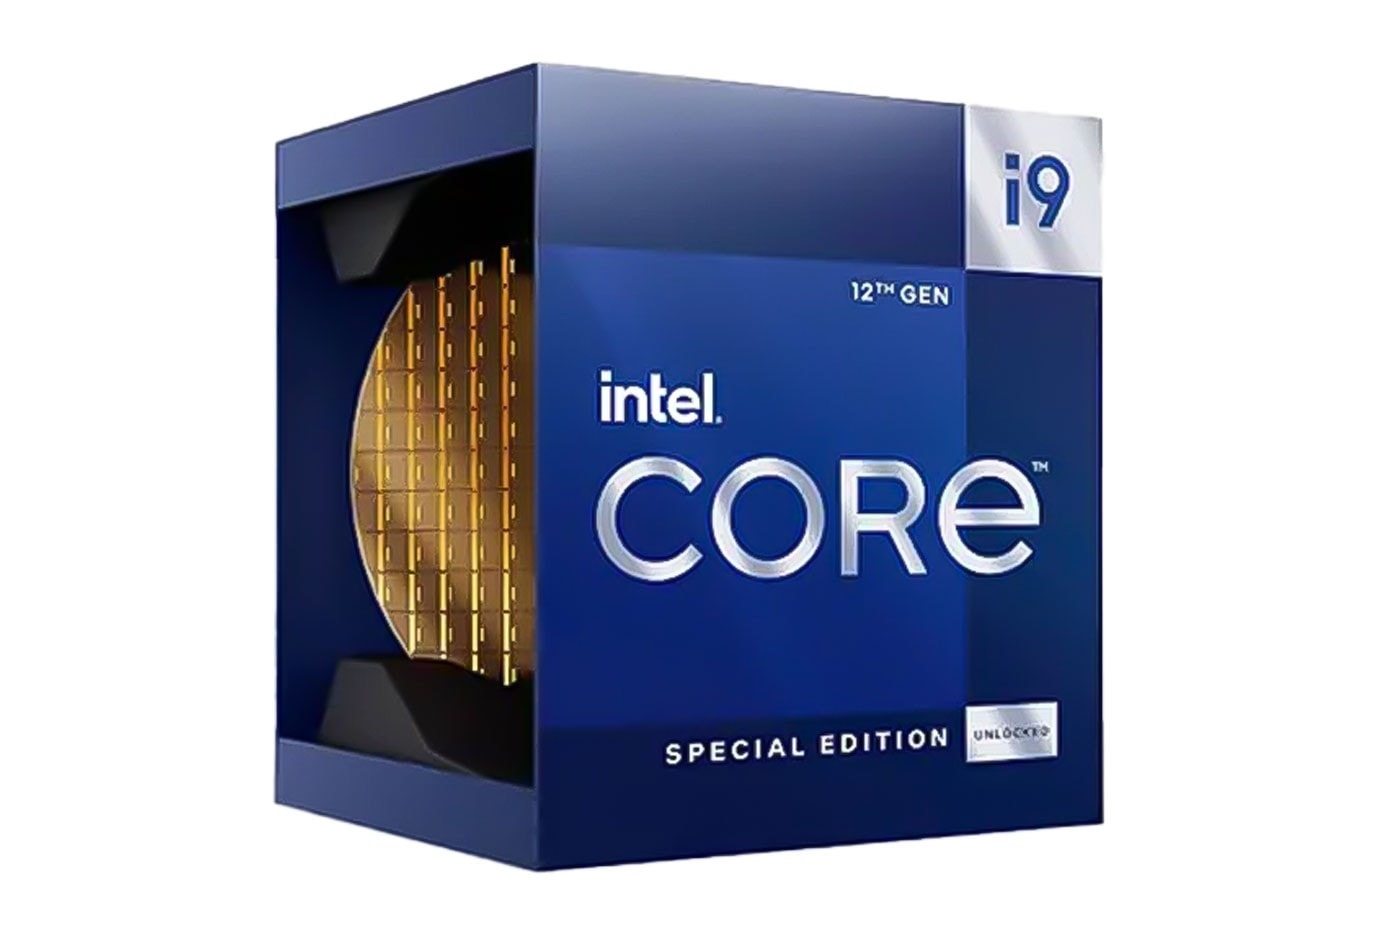 인텔, "새로운 인텔 코어 i9 칩은 세상에서 제일 빠른 데스크톱 프로세서", AMD, 암드, 라이젠, 데스크톱, 조립형 컴퓨터